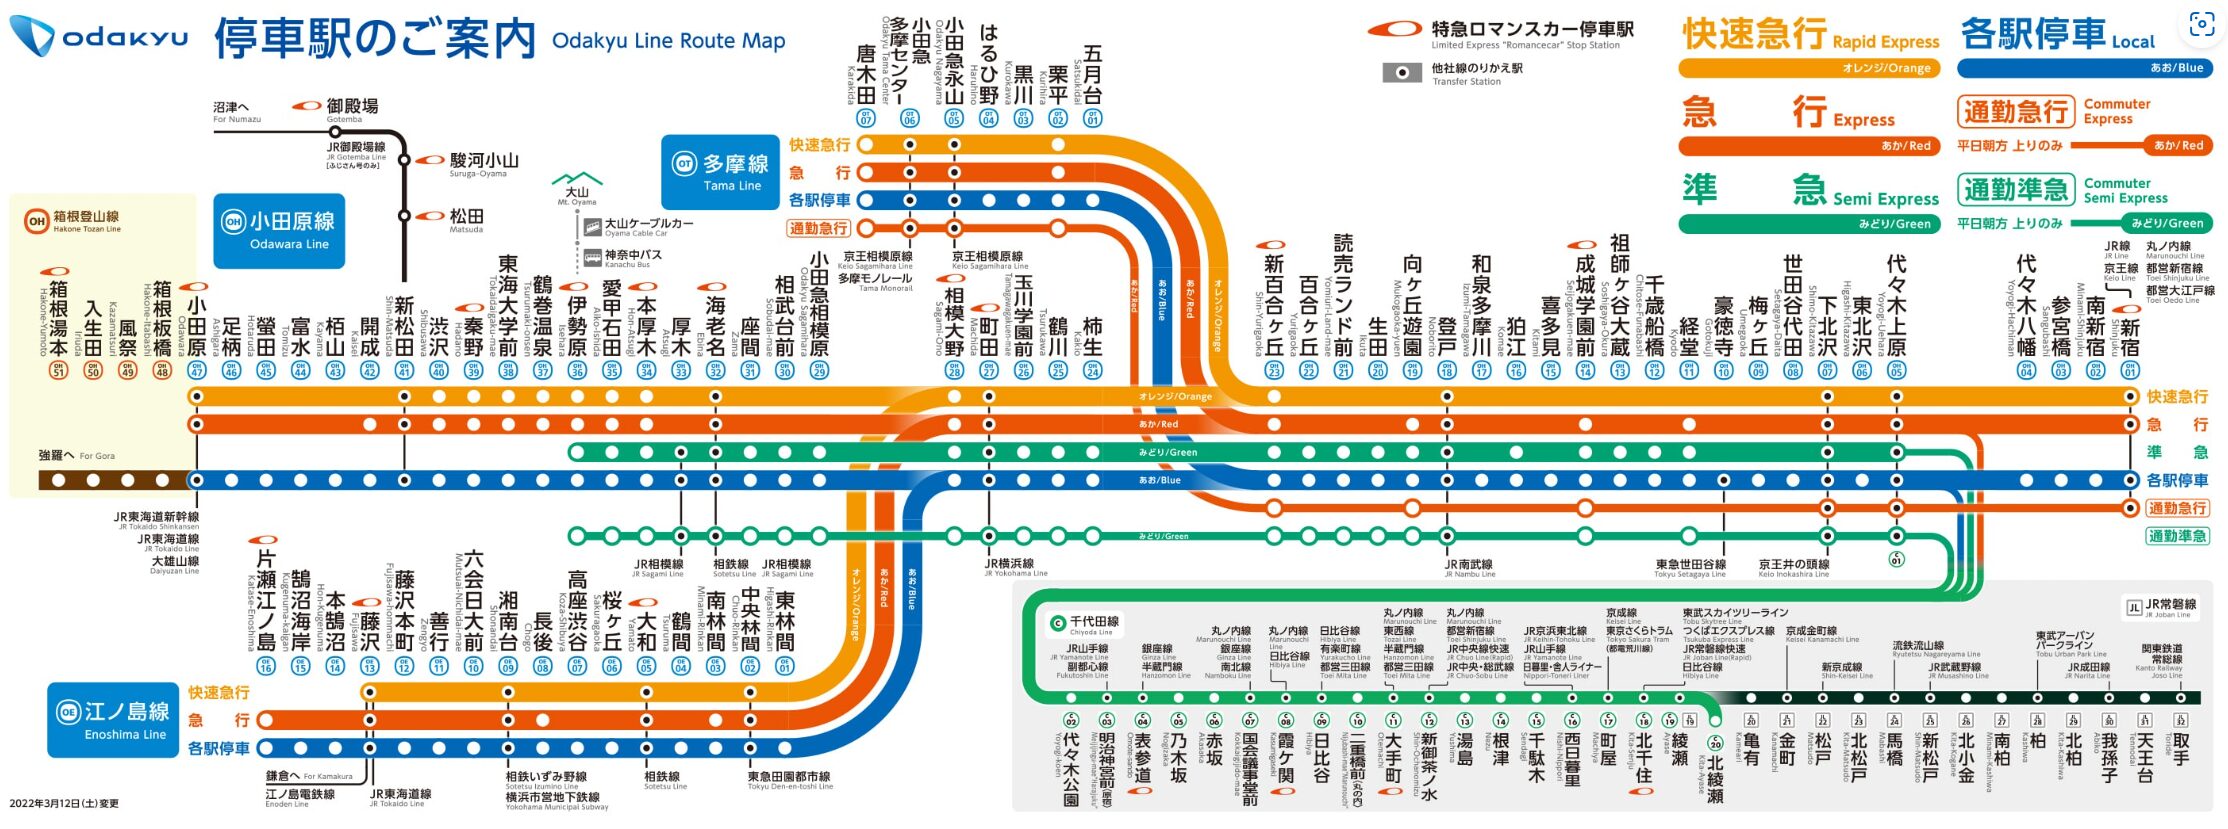 公式サイトより引用：小田急江ノ島線路線図